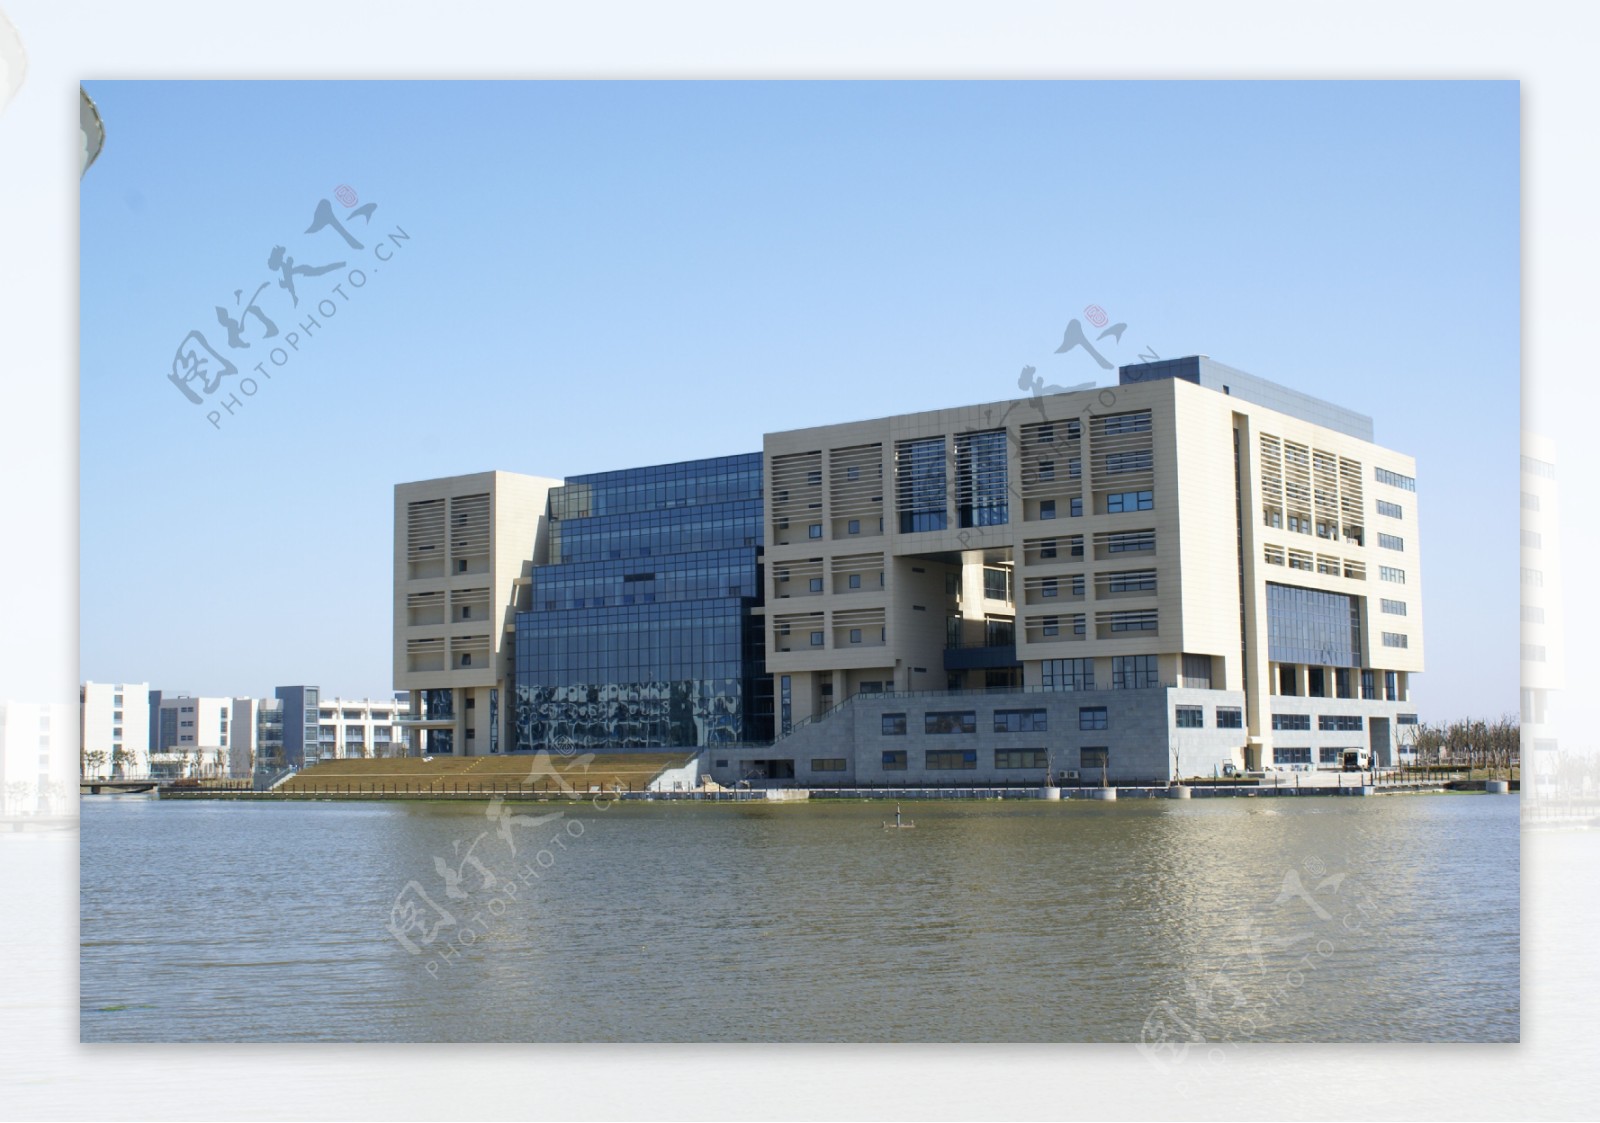 上海海事大学图书馆背面摄影之二图片